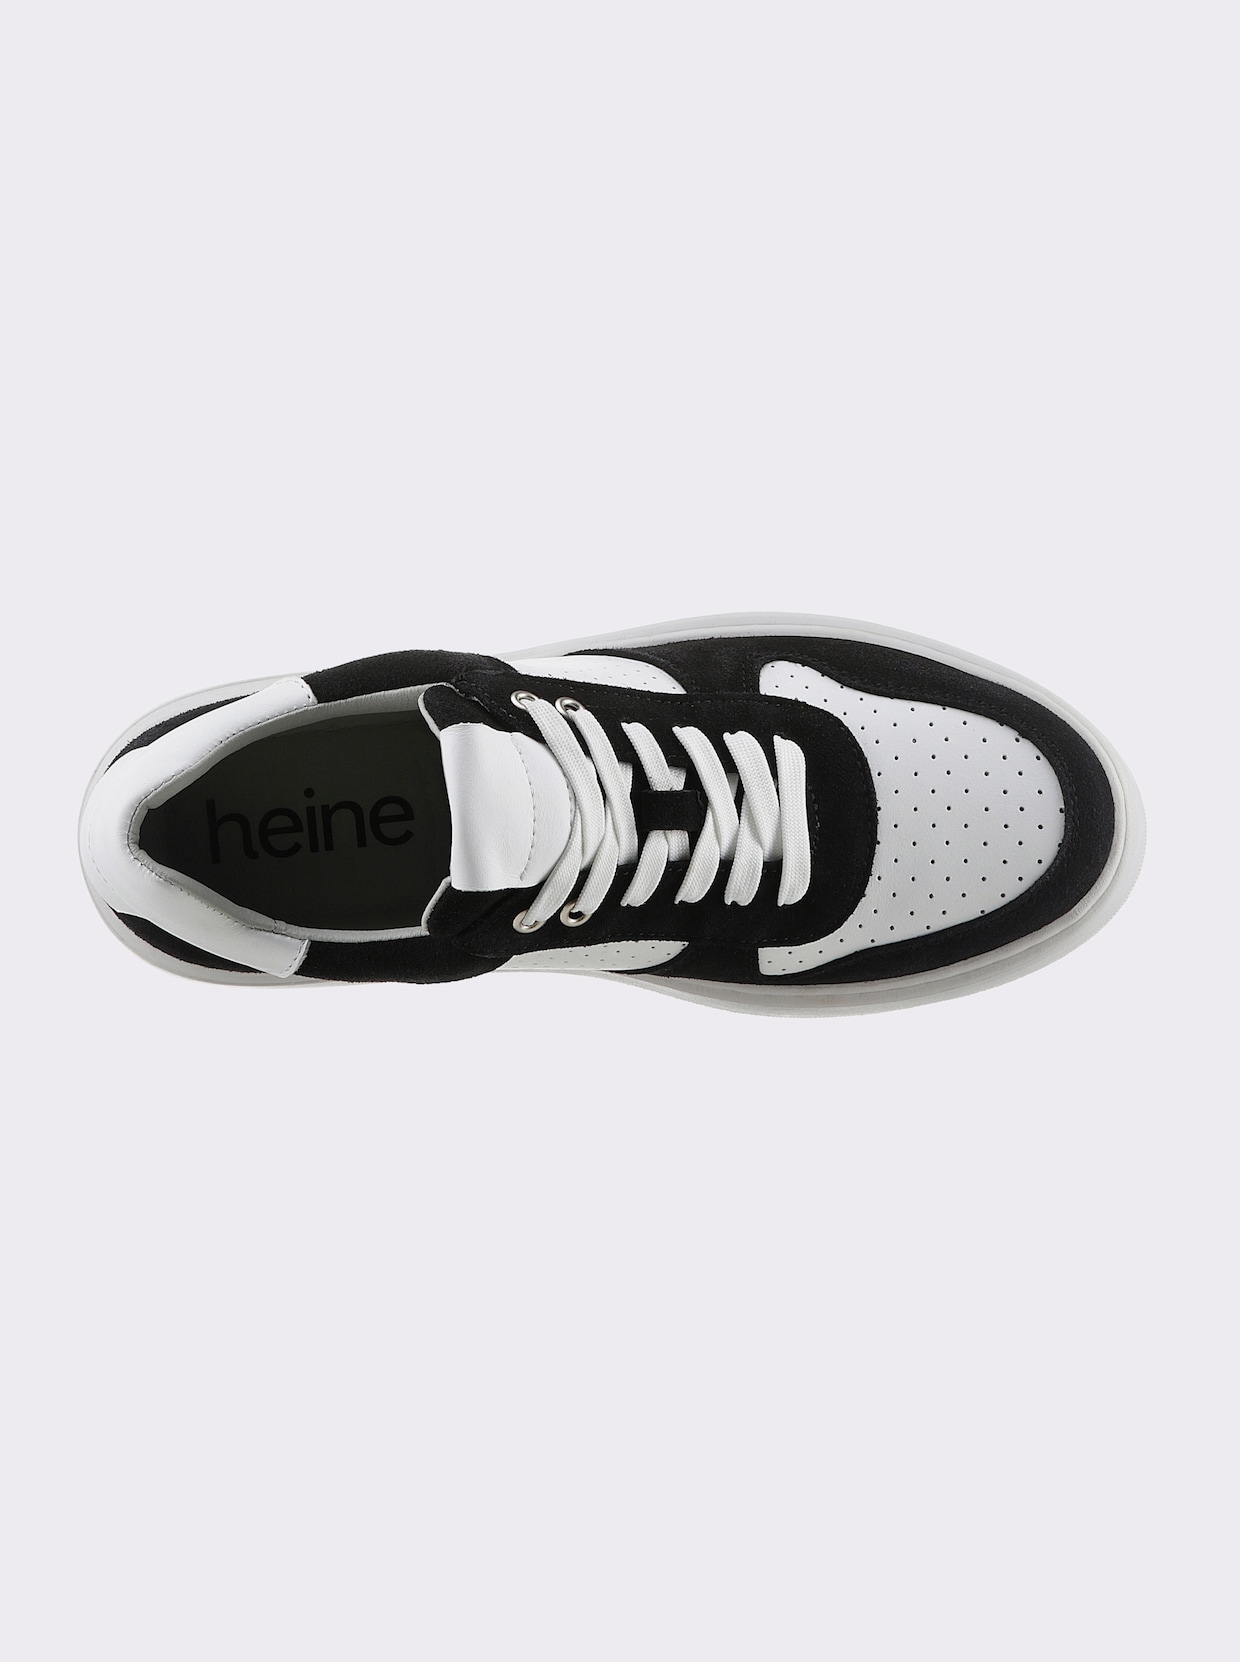 heine Sneaker - schwarz-weiss